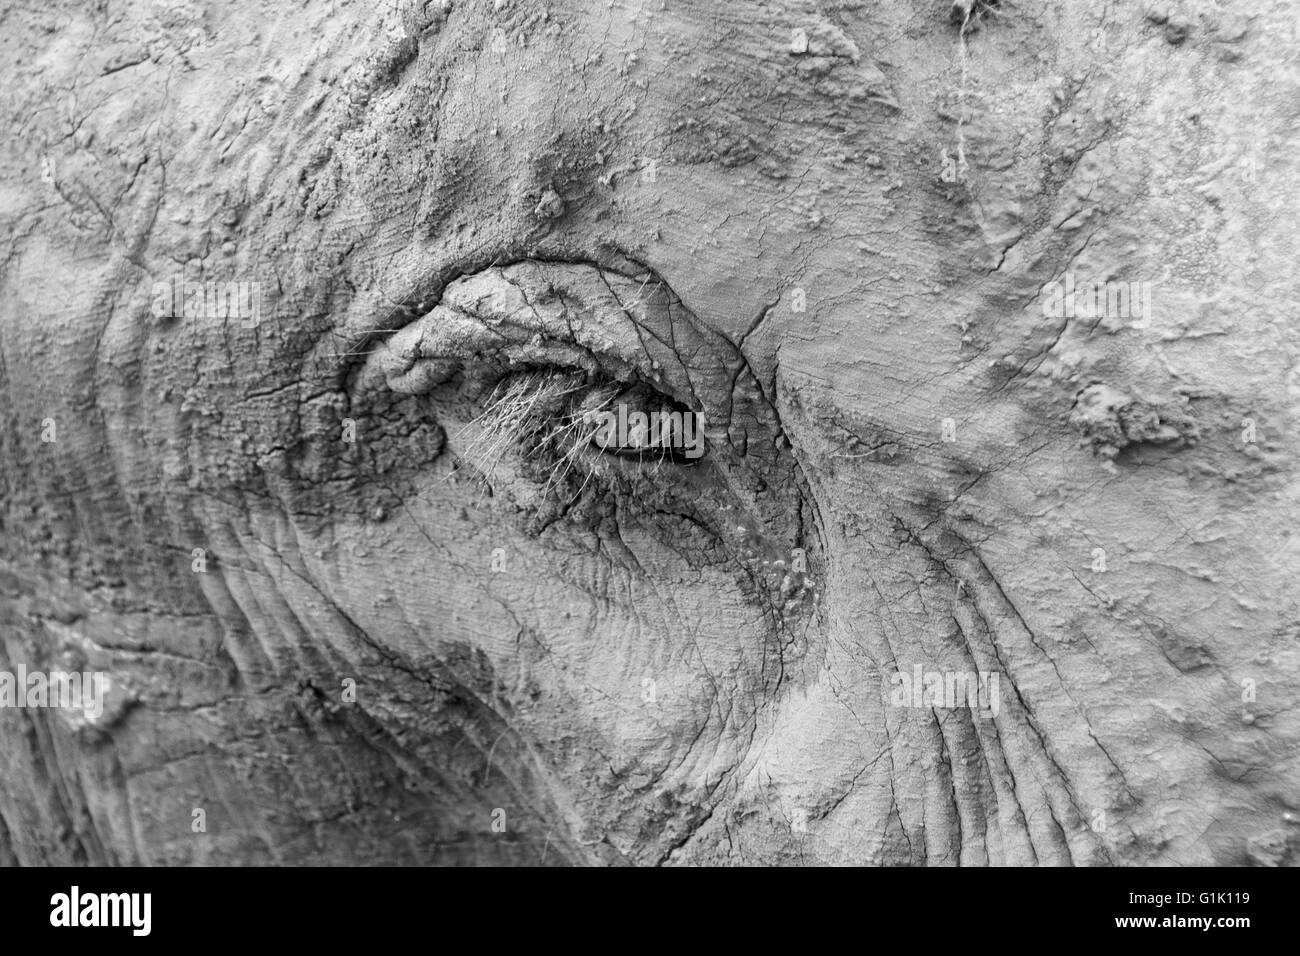 Primo piano della testa dell'elefante indiano concentrandosi sull'occhio in bianco e nero Foto Stock